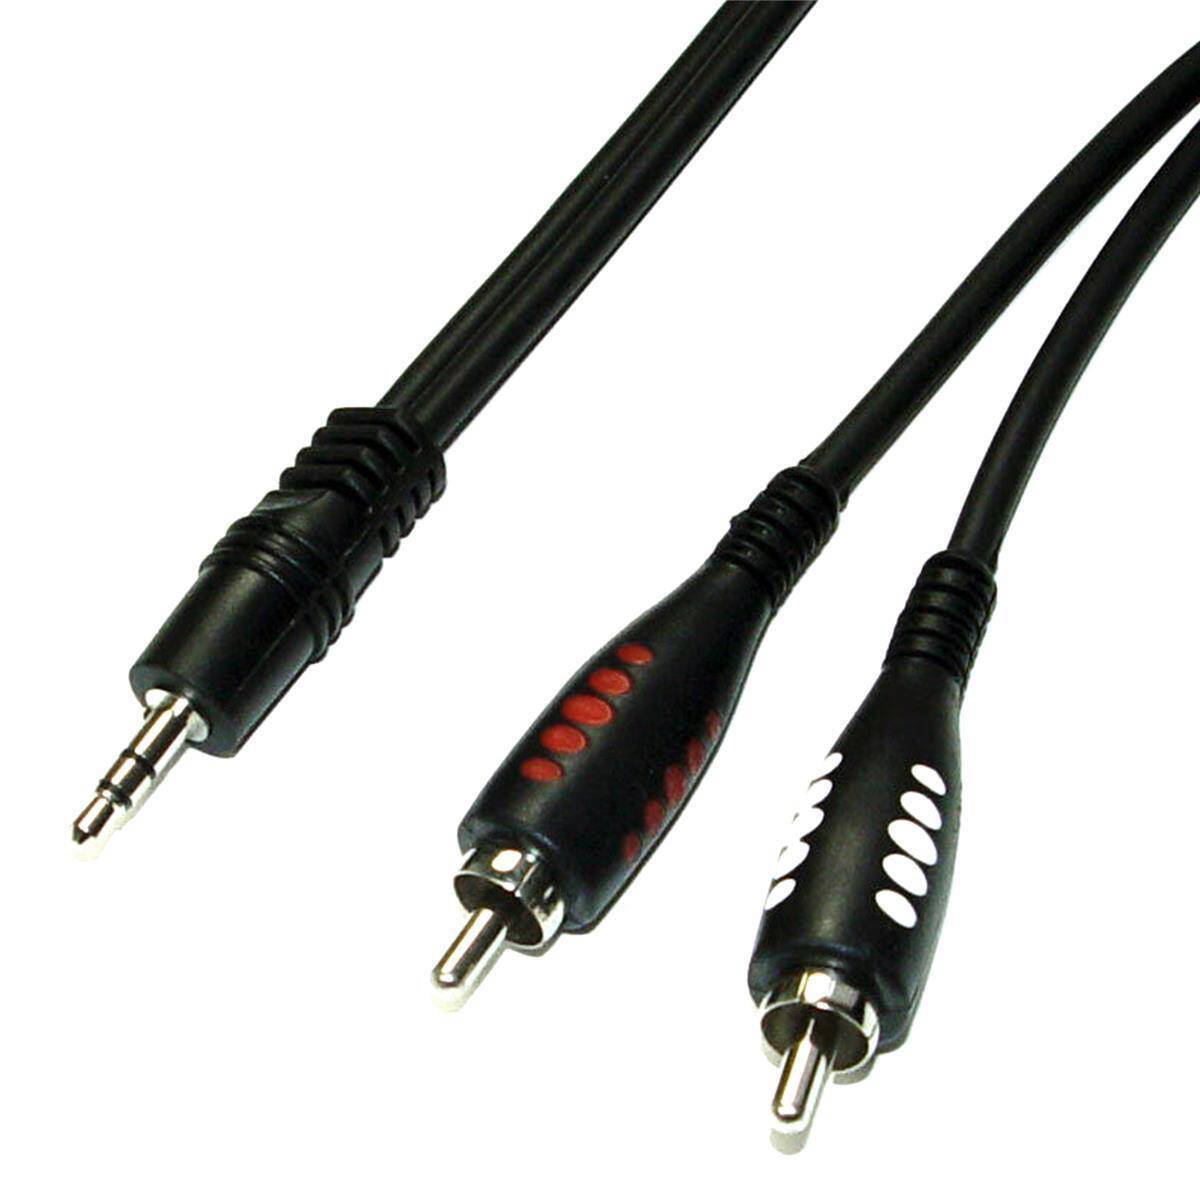 Twin Kabel Audiokabel 2 x Cinch auf 2 x 6,35 Klinke doppel-Kabel 3m